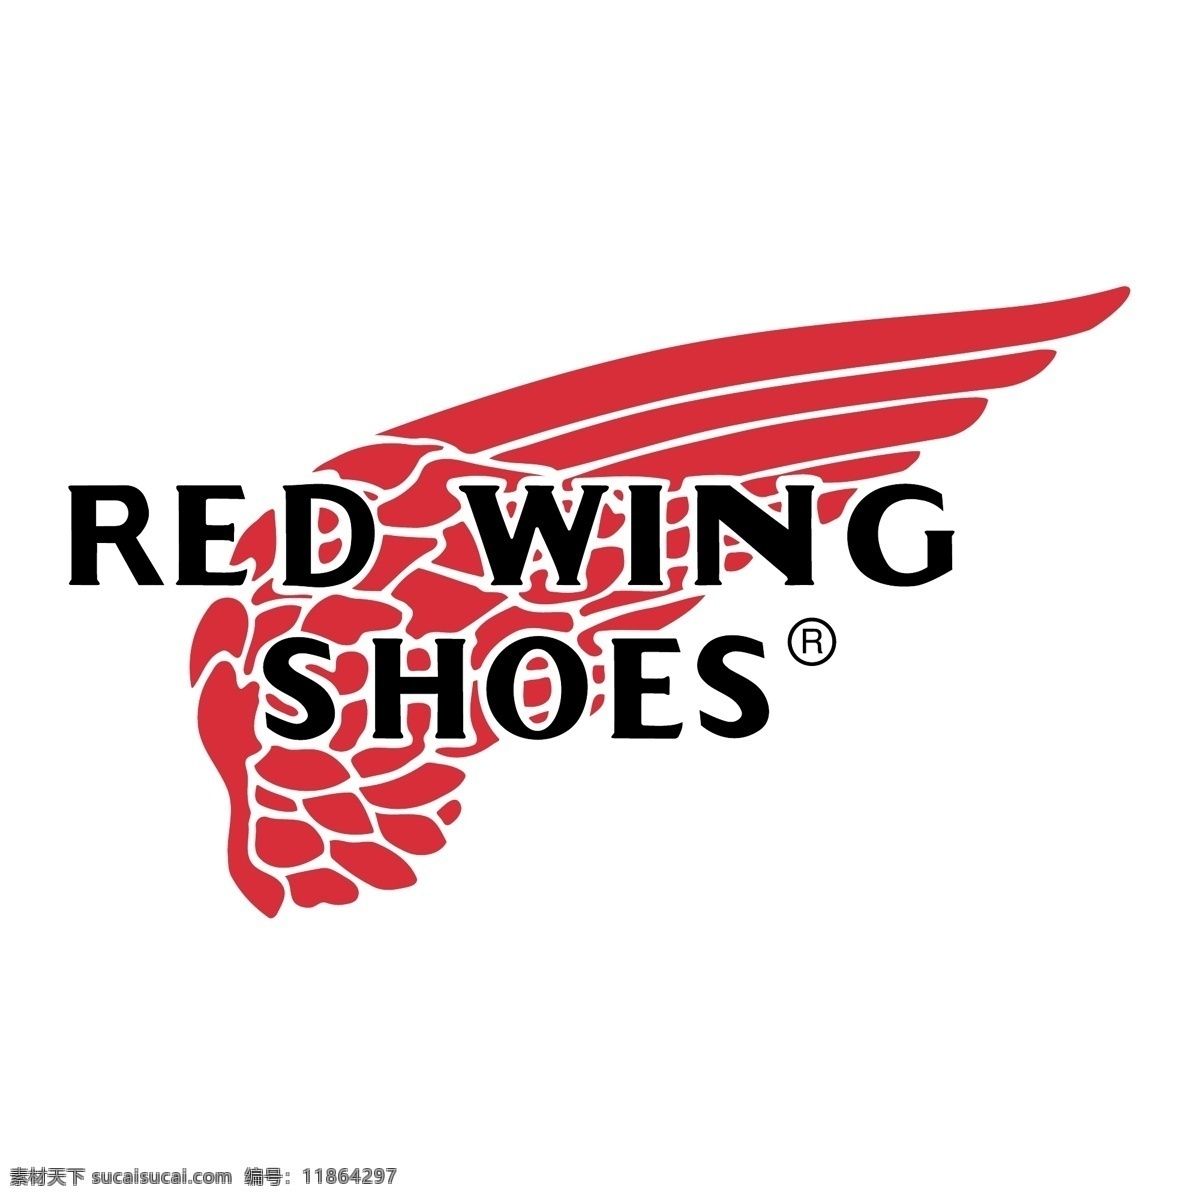 红色 鞋 翼 红色的翼 翼鞋 红翼鞋 免费 矢量 红 翅 红翅向量 向量红翅 向量红色的鞋 红色的高跟鞋 向量 高跟鞋 红色的女装鞋 红翅夹 红色的女孩 矢量图 建筑家居